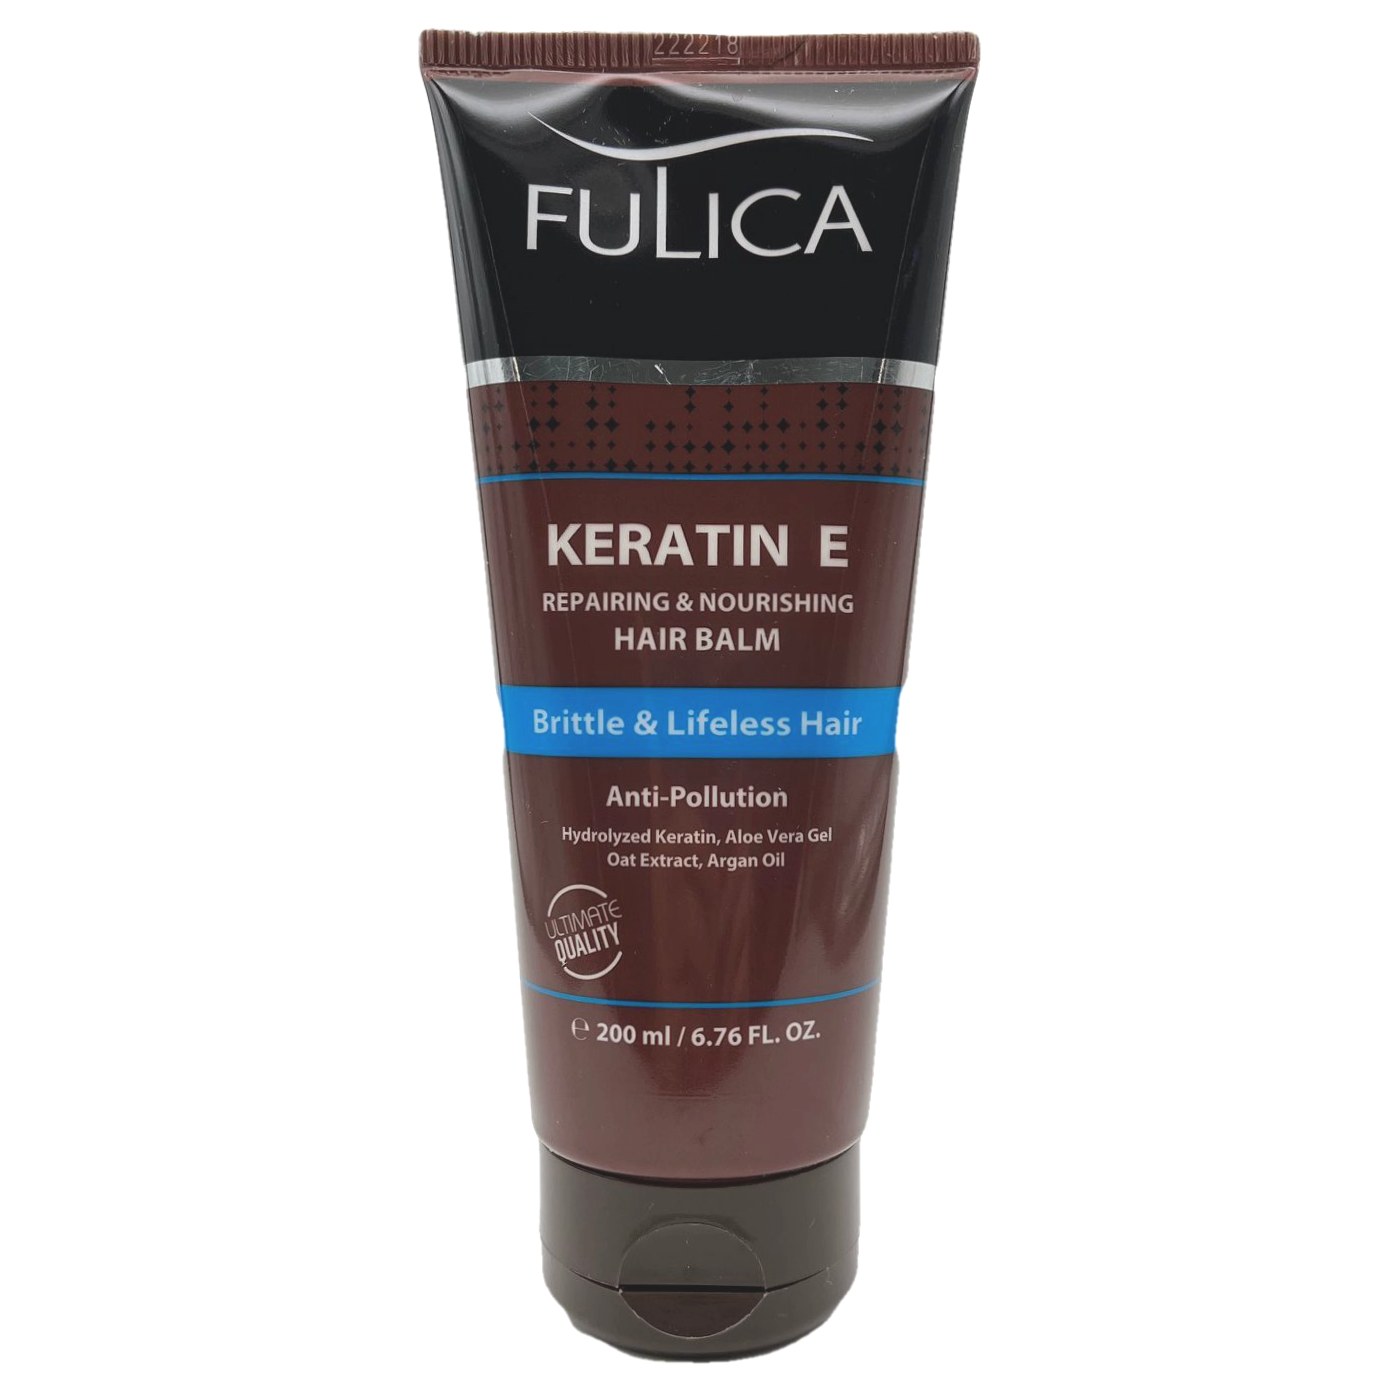 بالم نرم کننده و تقویت کننده مو فولیکا حاوی کراتین E مناسب مو خشک و شکننده Fulica 